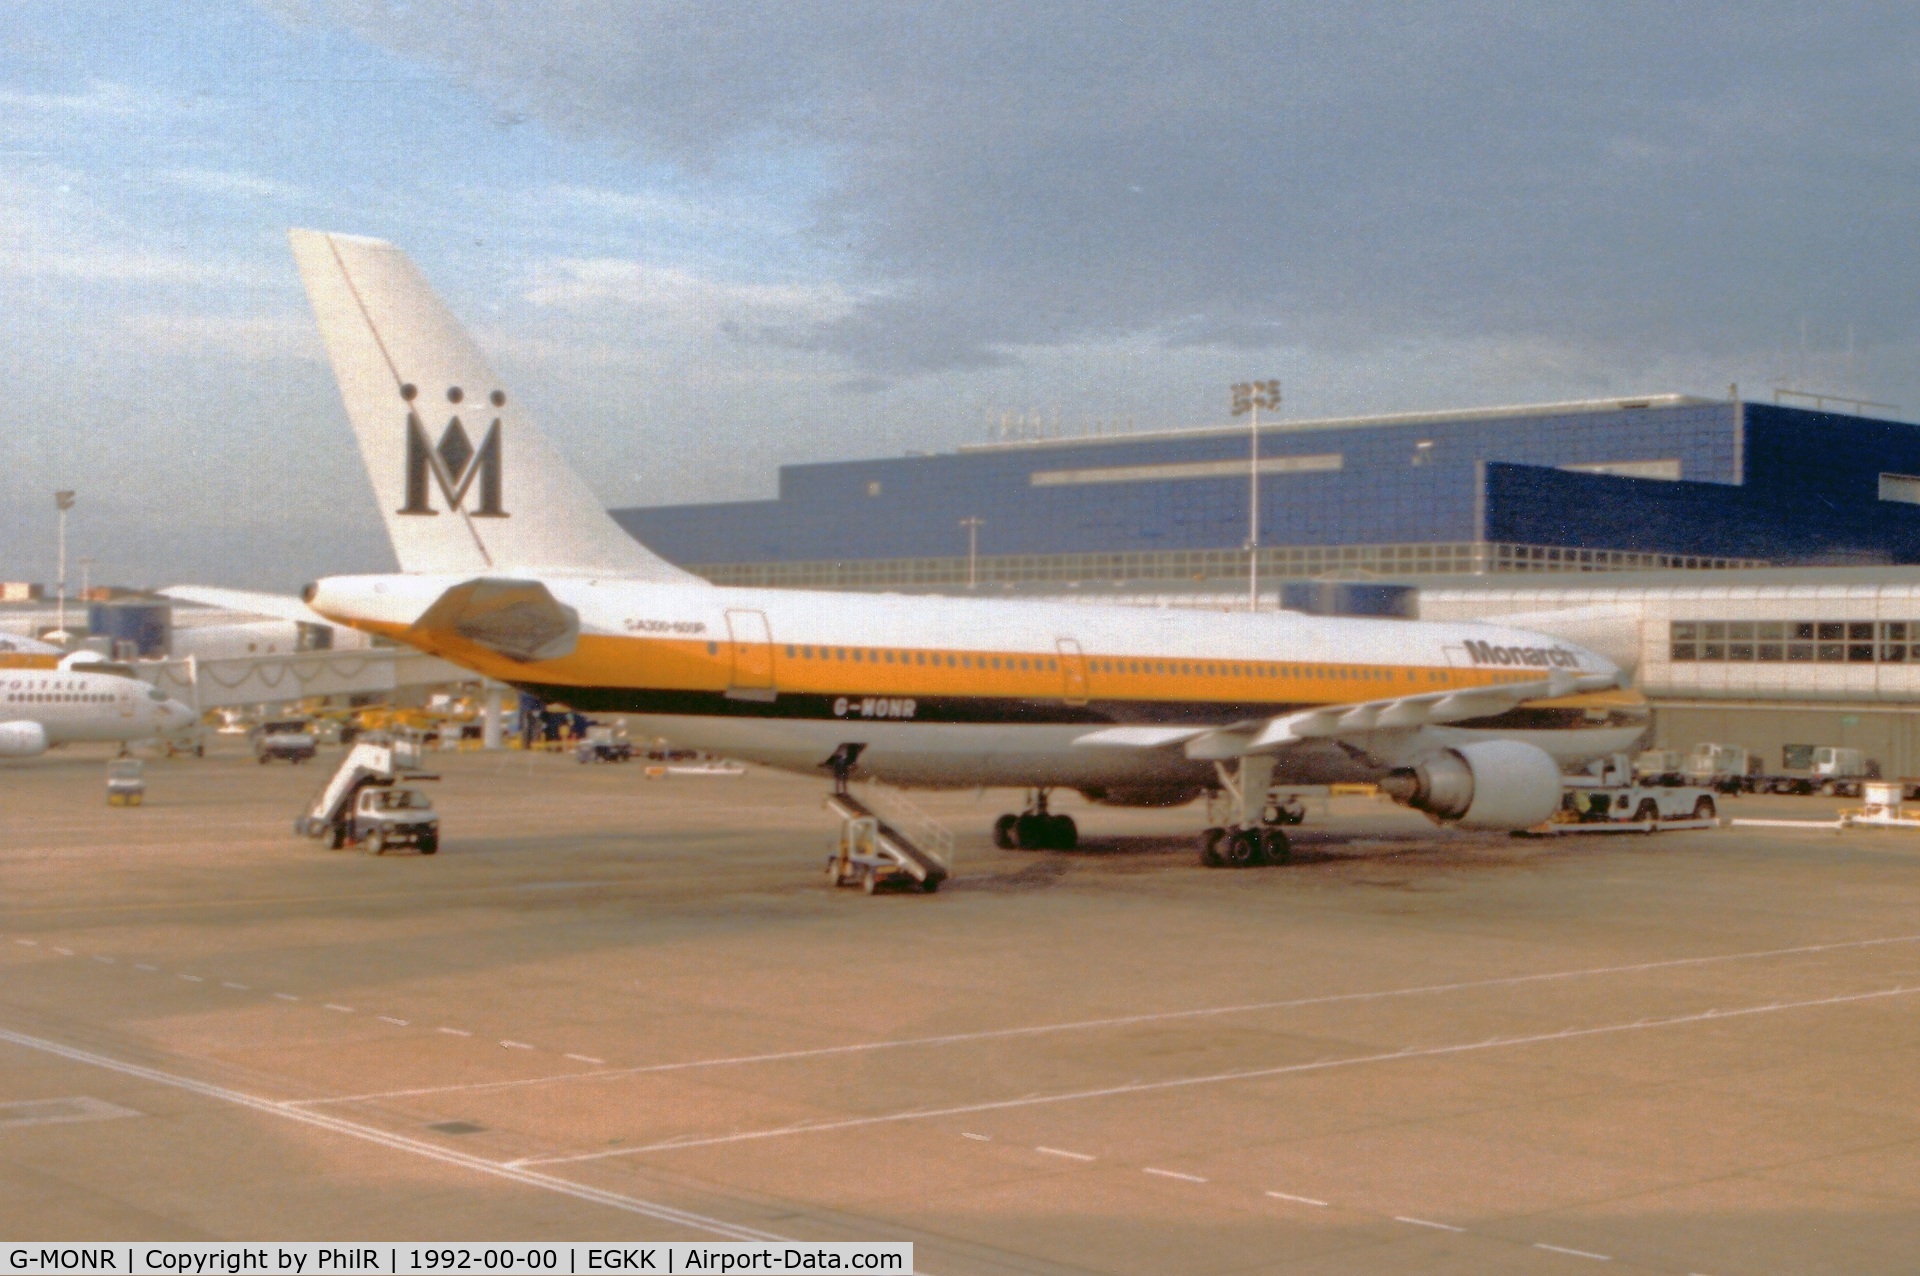 G-MONR, 1989 Airbus A300B4-605R C/N 540, G-MONR 1989 A300B4-600 Monarch LGW